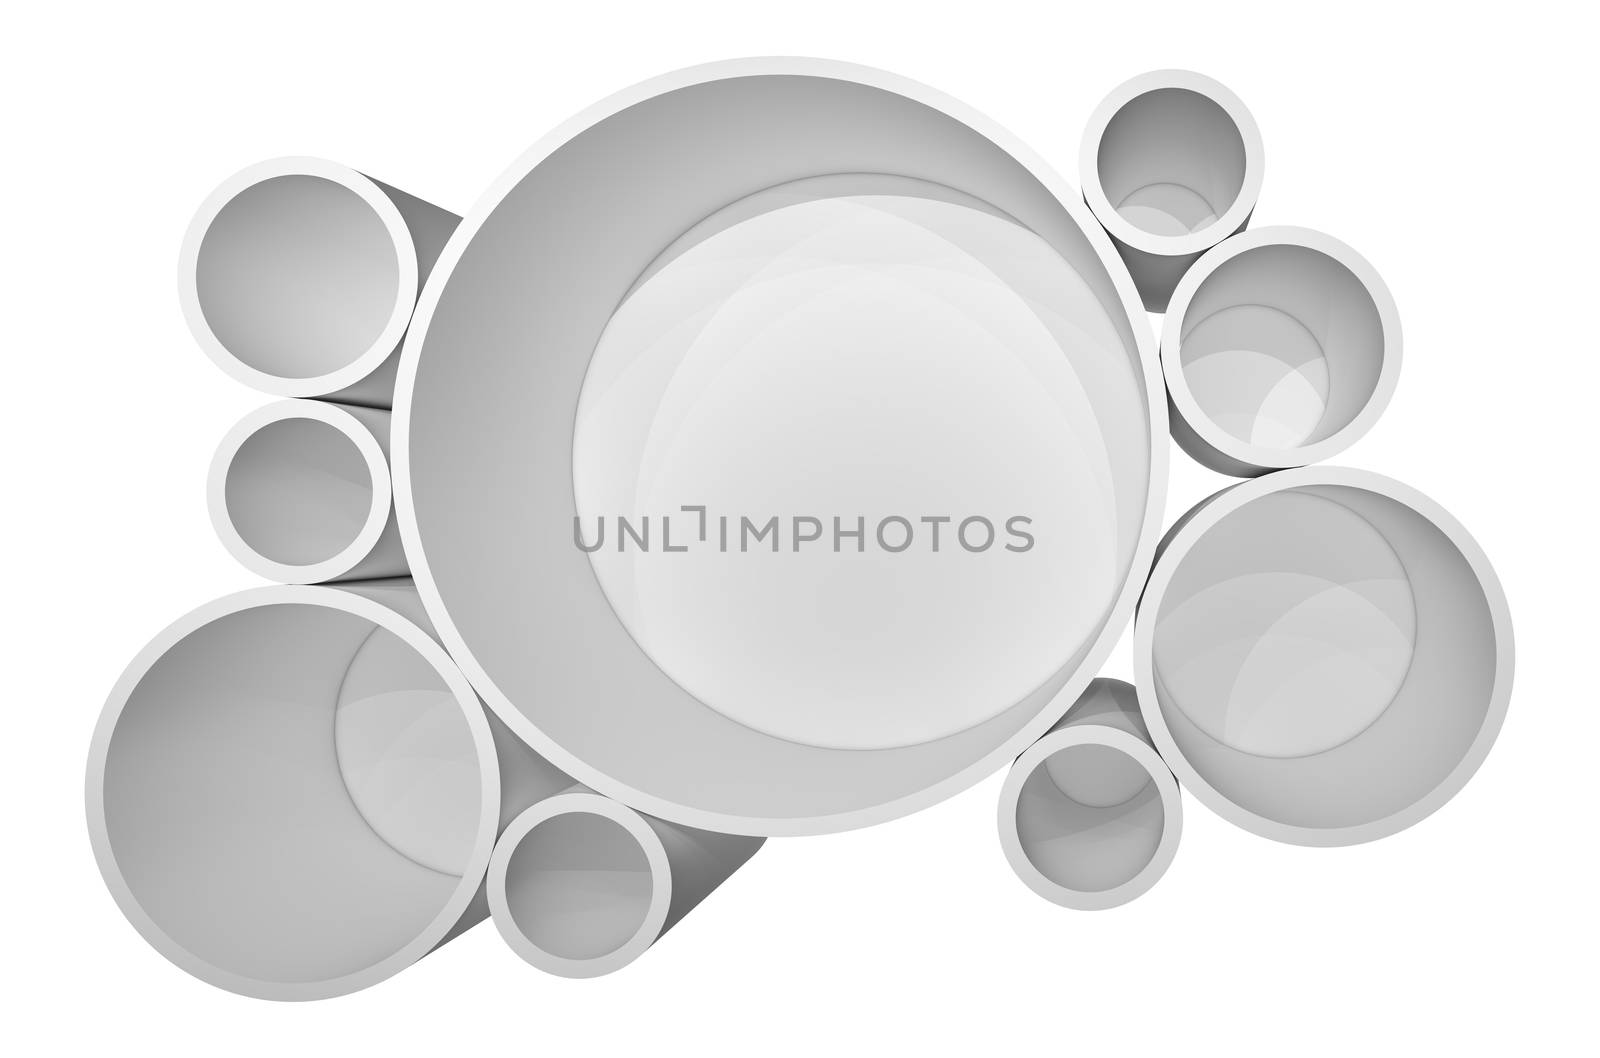 Illuminated circle white shelf for presentations. Isolated on white background. 3D illustration